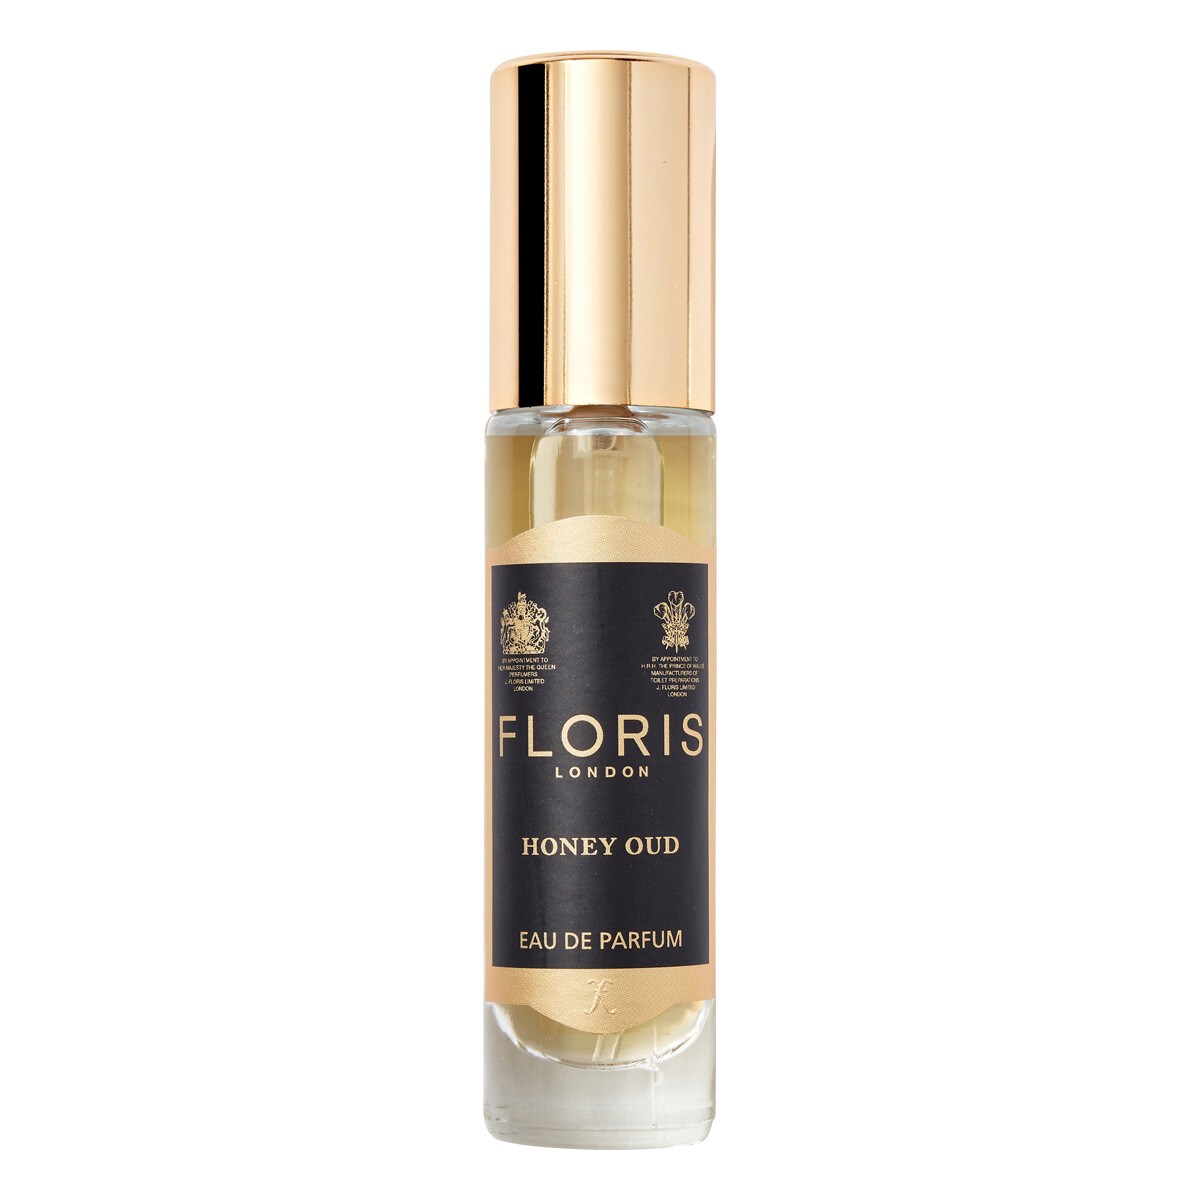 Billede af Floris Honey Oud, Eau de Parfum, 10 ml.